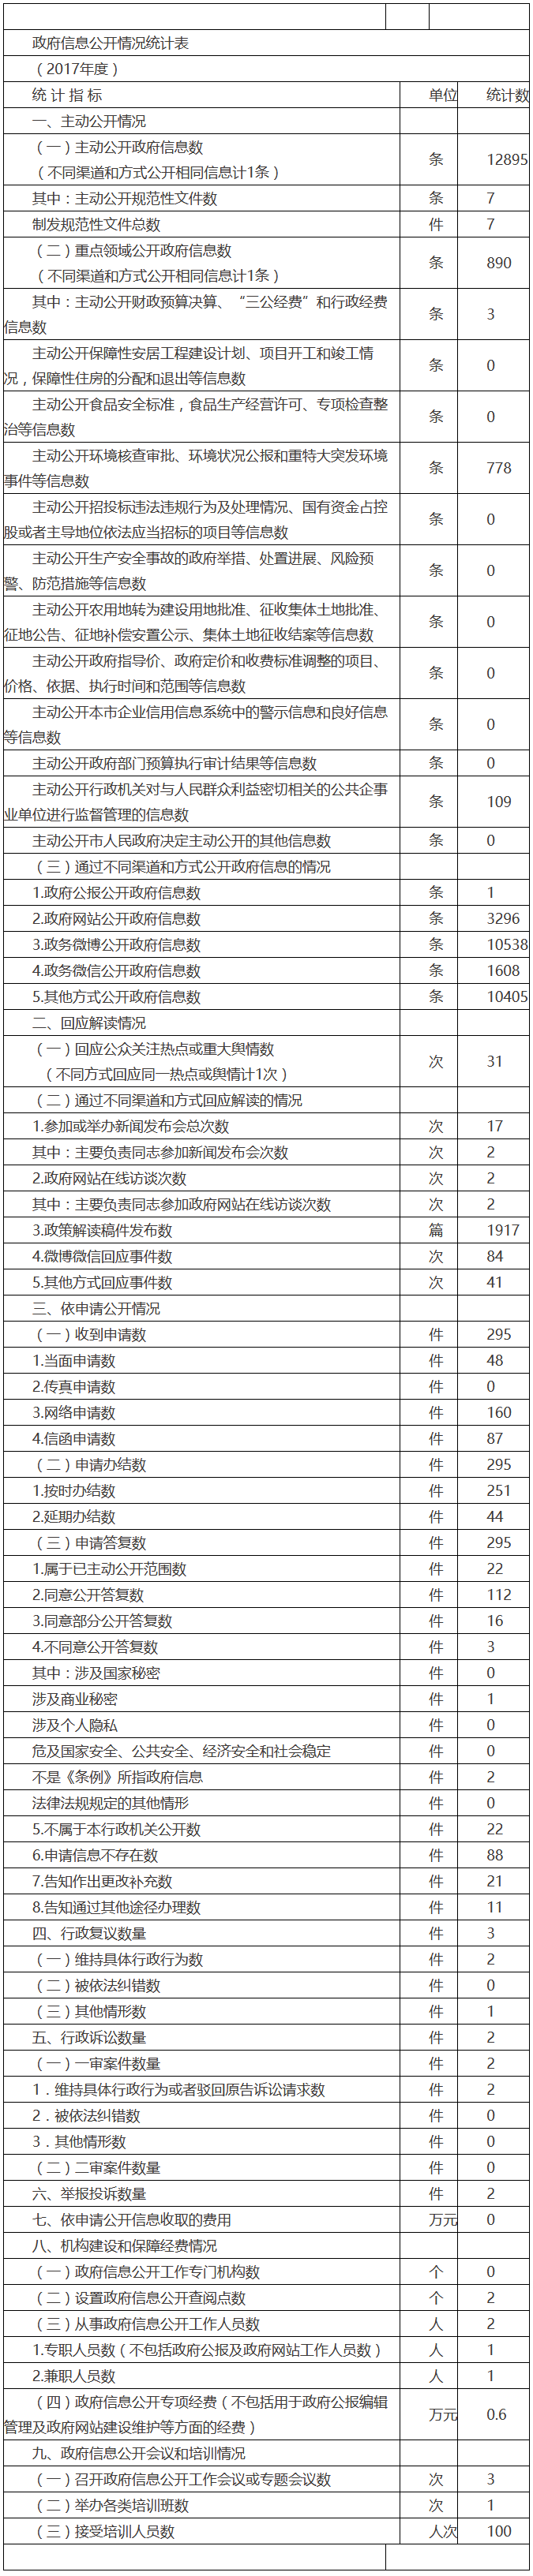 北京市環境保護局政府信息公開情況統計表(2017年度)